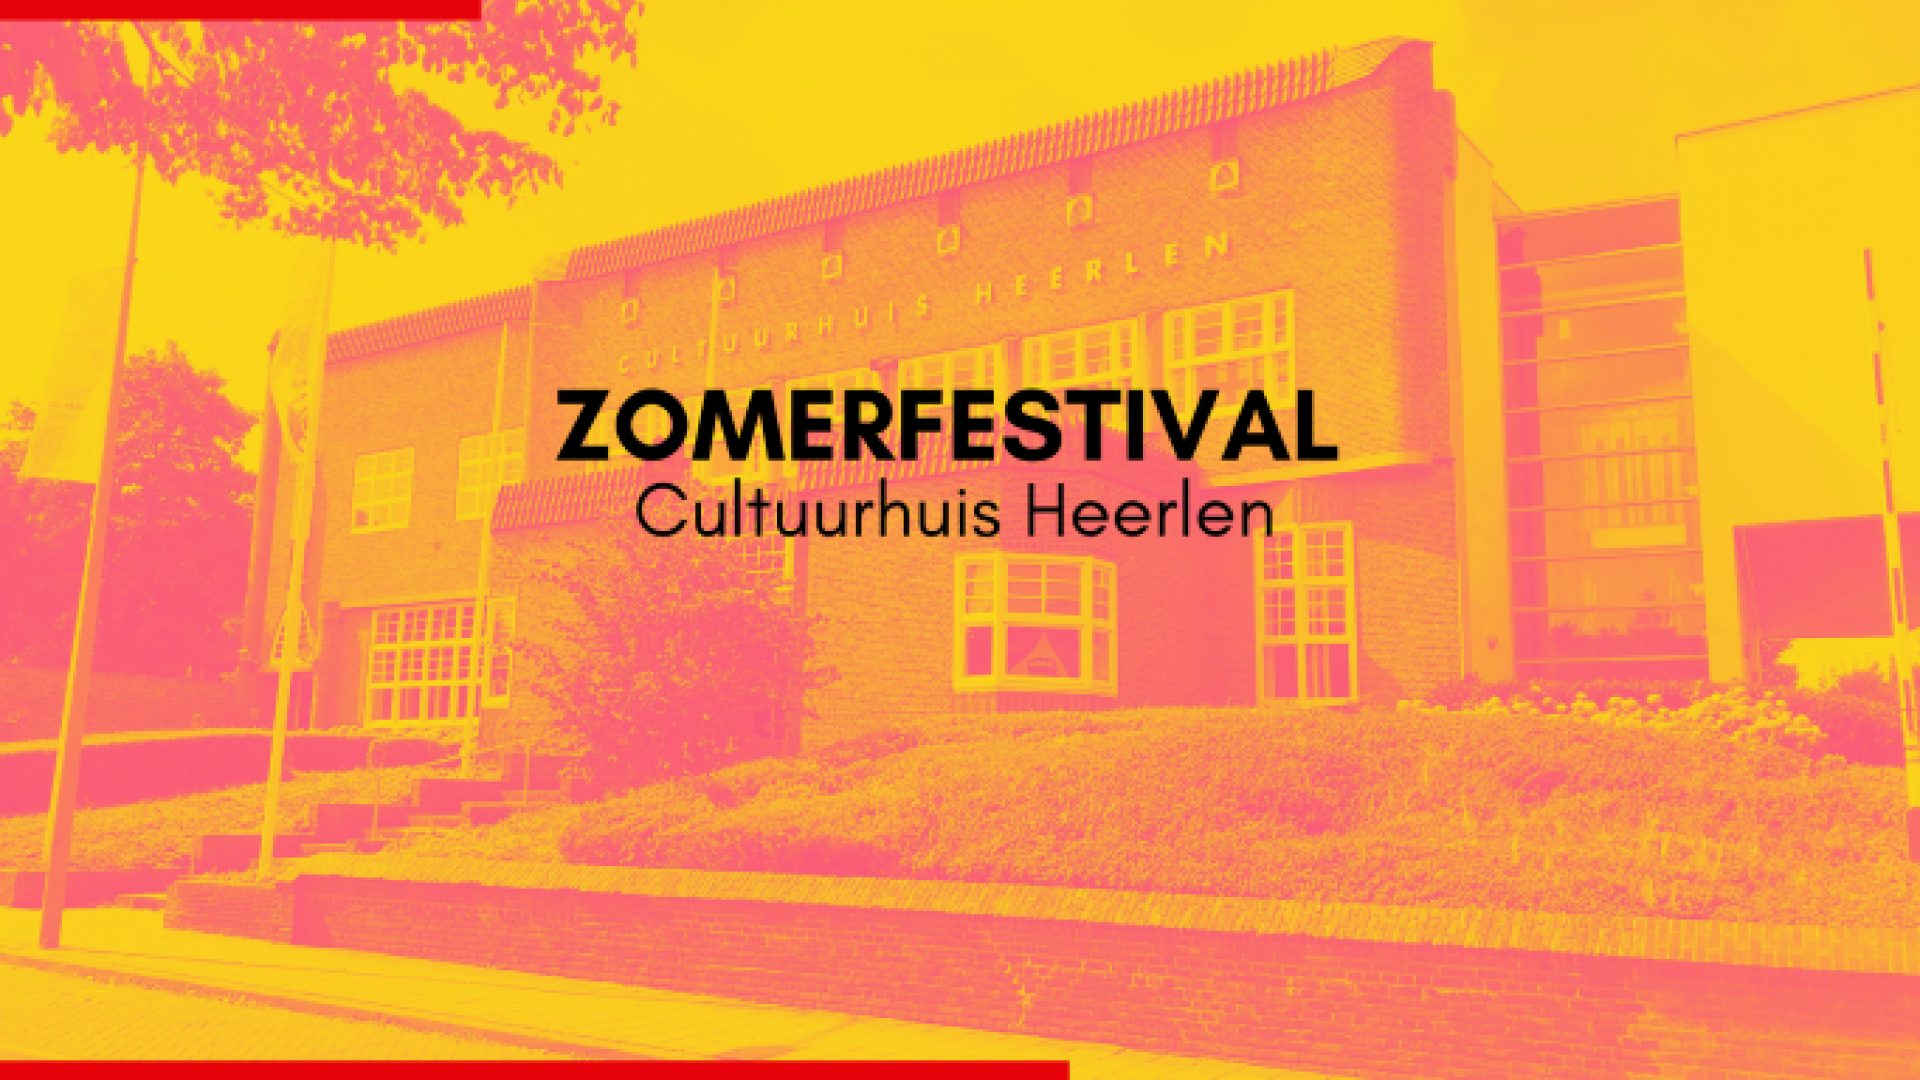 Zomerfestival Cultuurhuis Heerlen